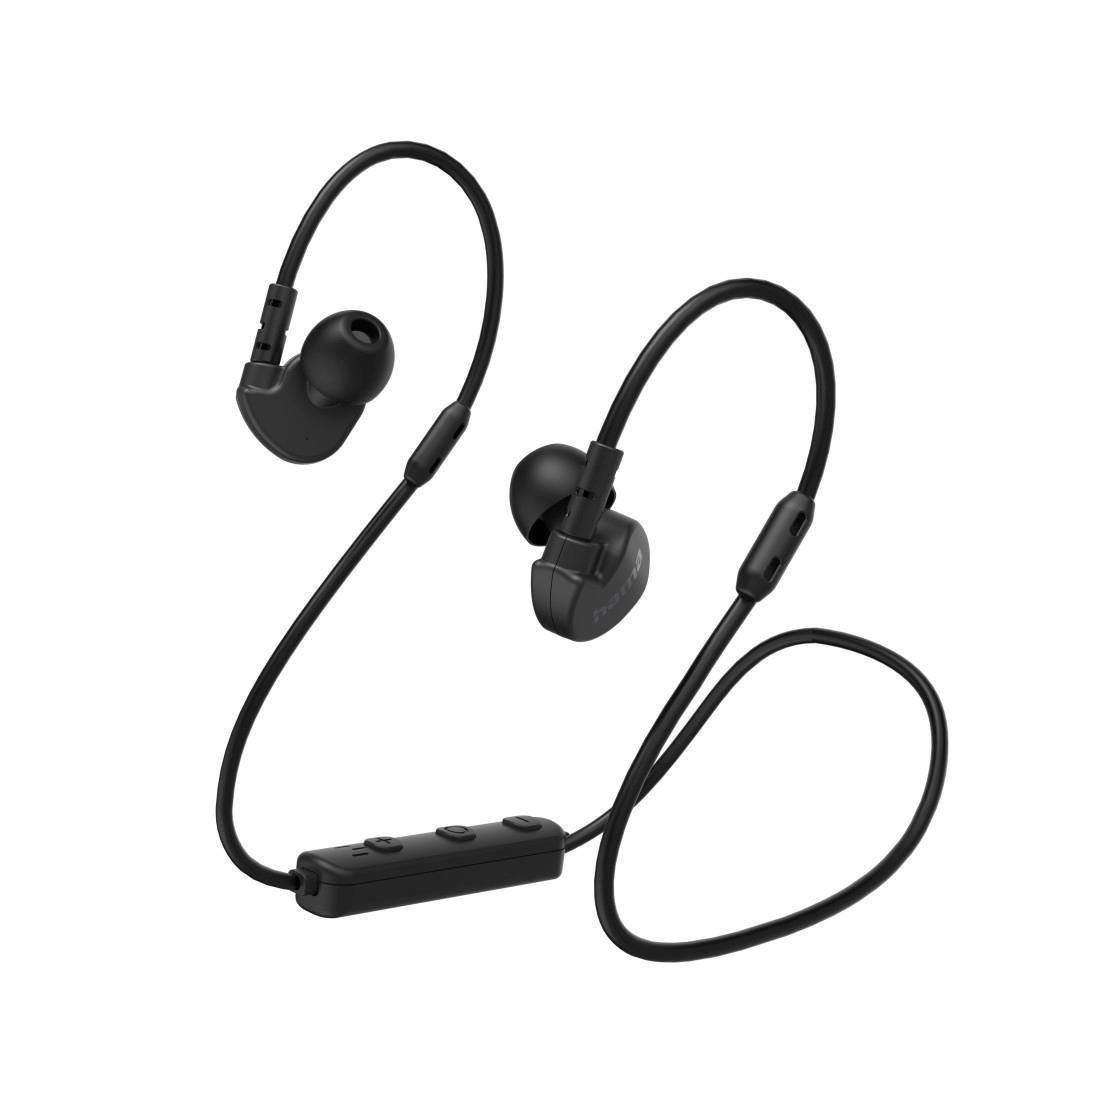 Kopfhörer Google Siri), Google die und ergonomisch Hama Siri (Freisprechfunktion, ultraleicht, Mikrofon, Sport, In-Ear-Kopfhörer In-Ear, Assistant, Assistant Unterstützt Bluetooth Sprachassistenten vorhandenen